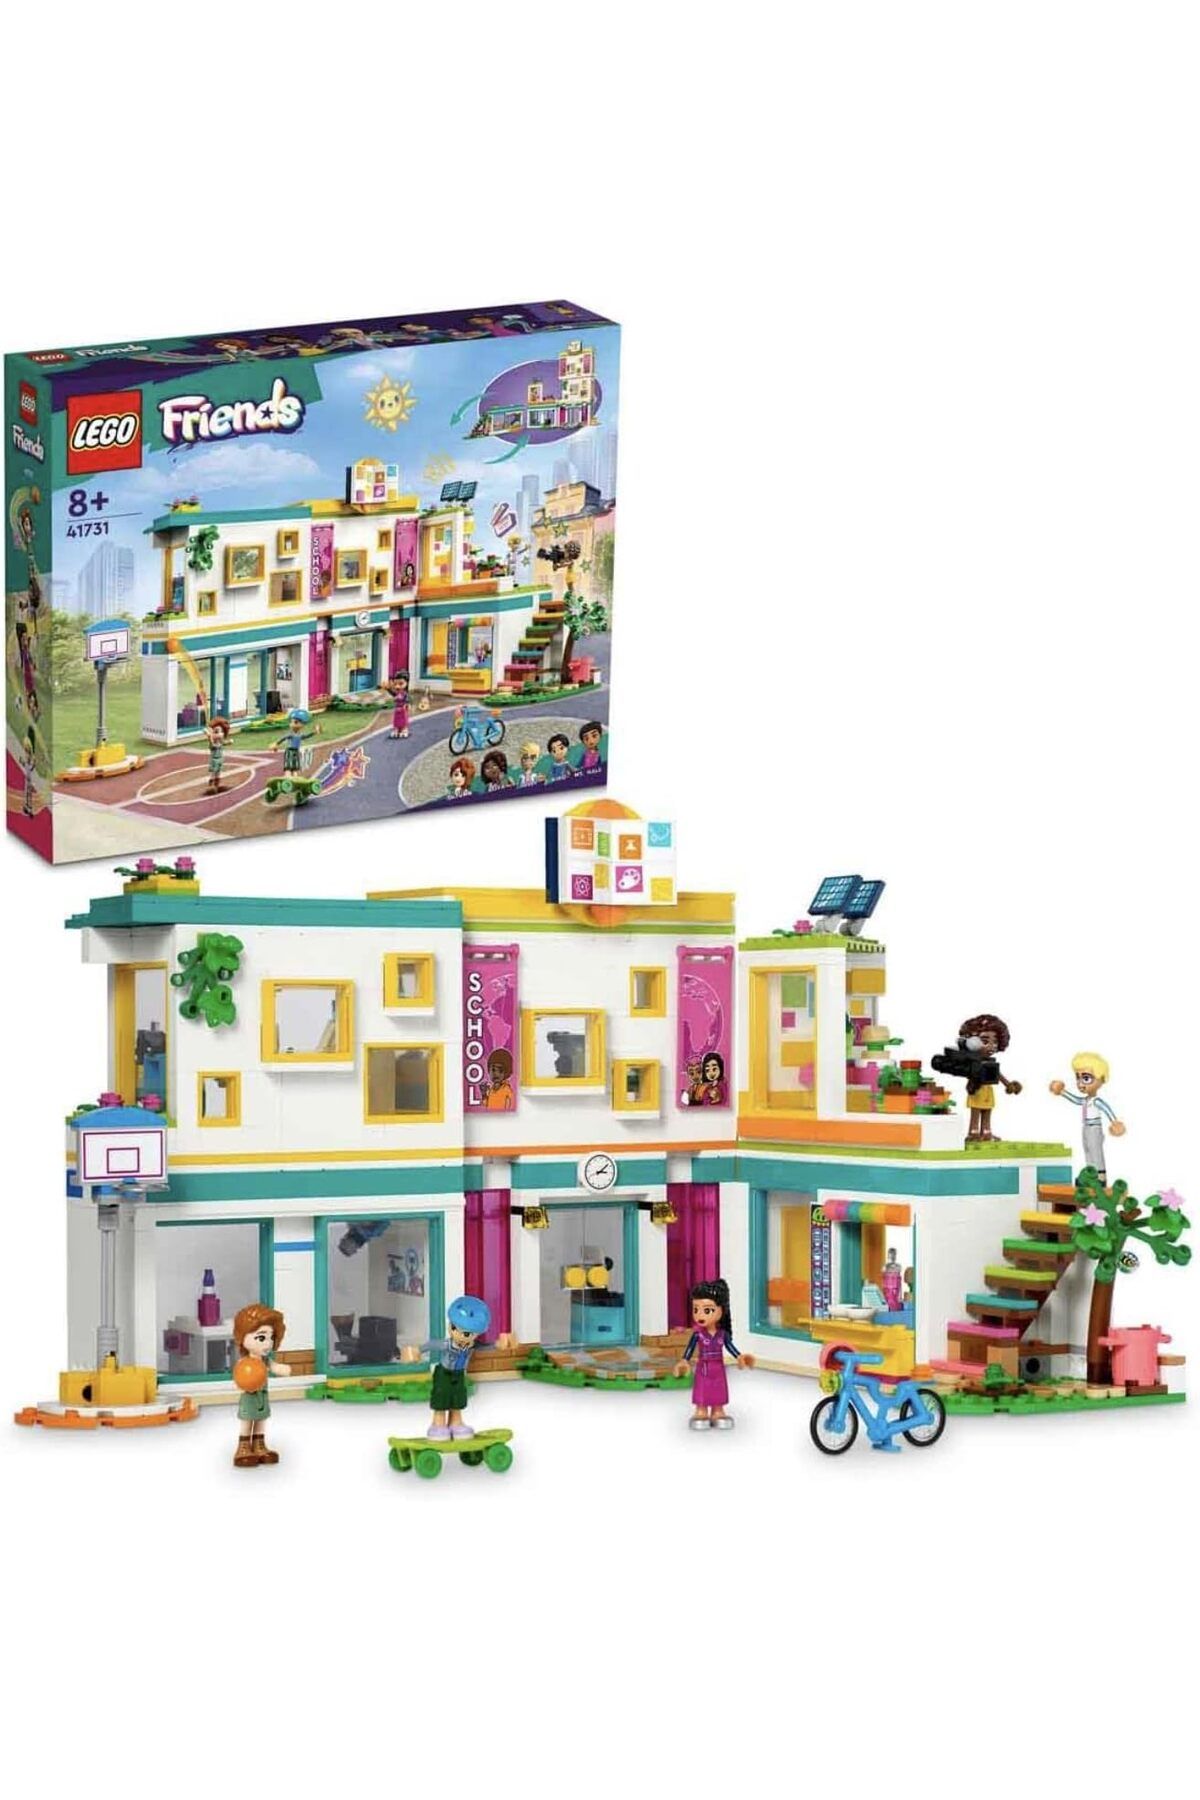 LEGO ® Friends Uluslararası Heartlake Okulu 41731 - 8 Yaş ve Üzeri için Oyuncak Yapım Seti(985 Parça)